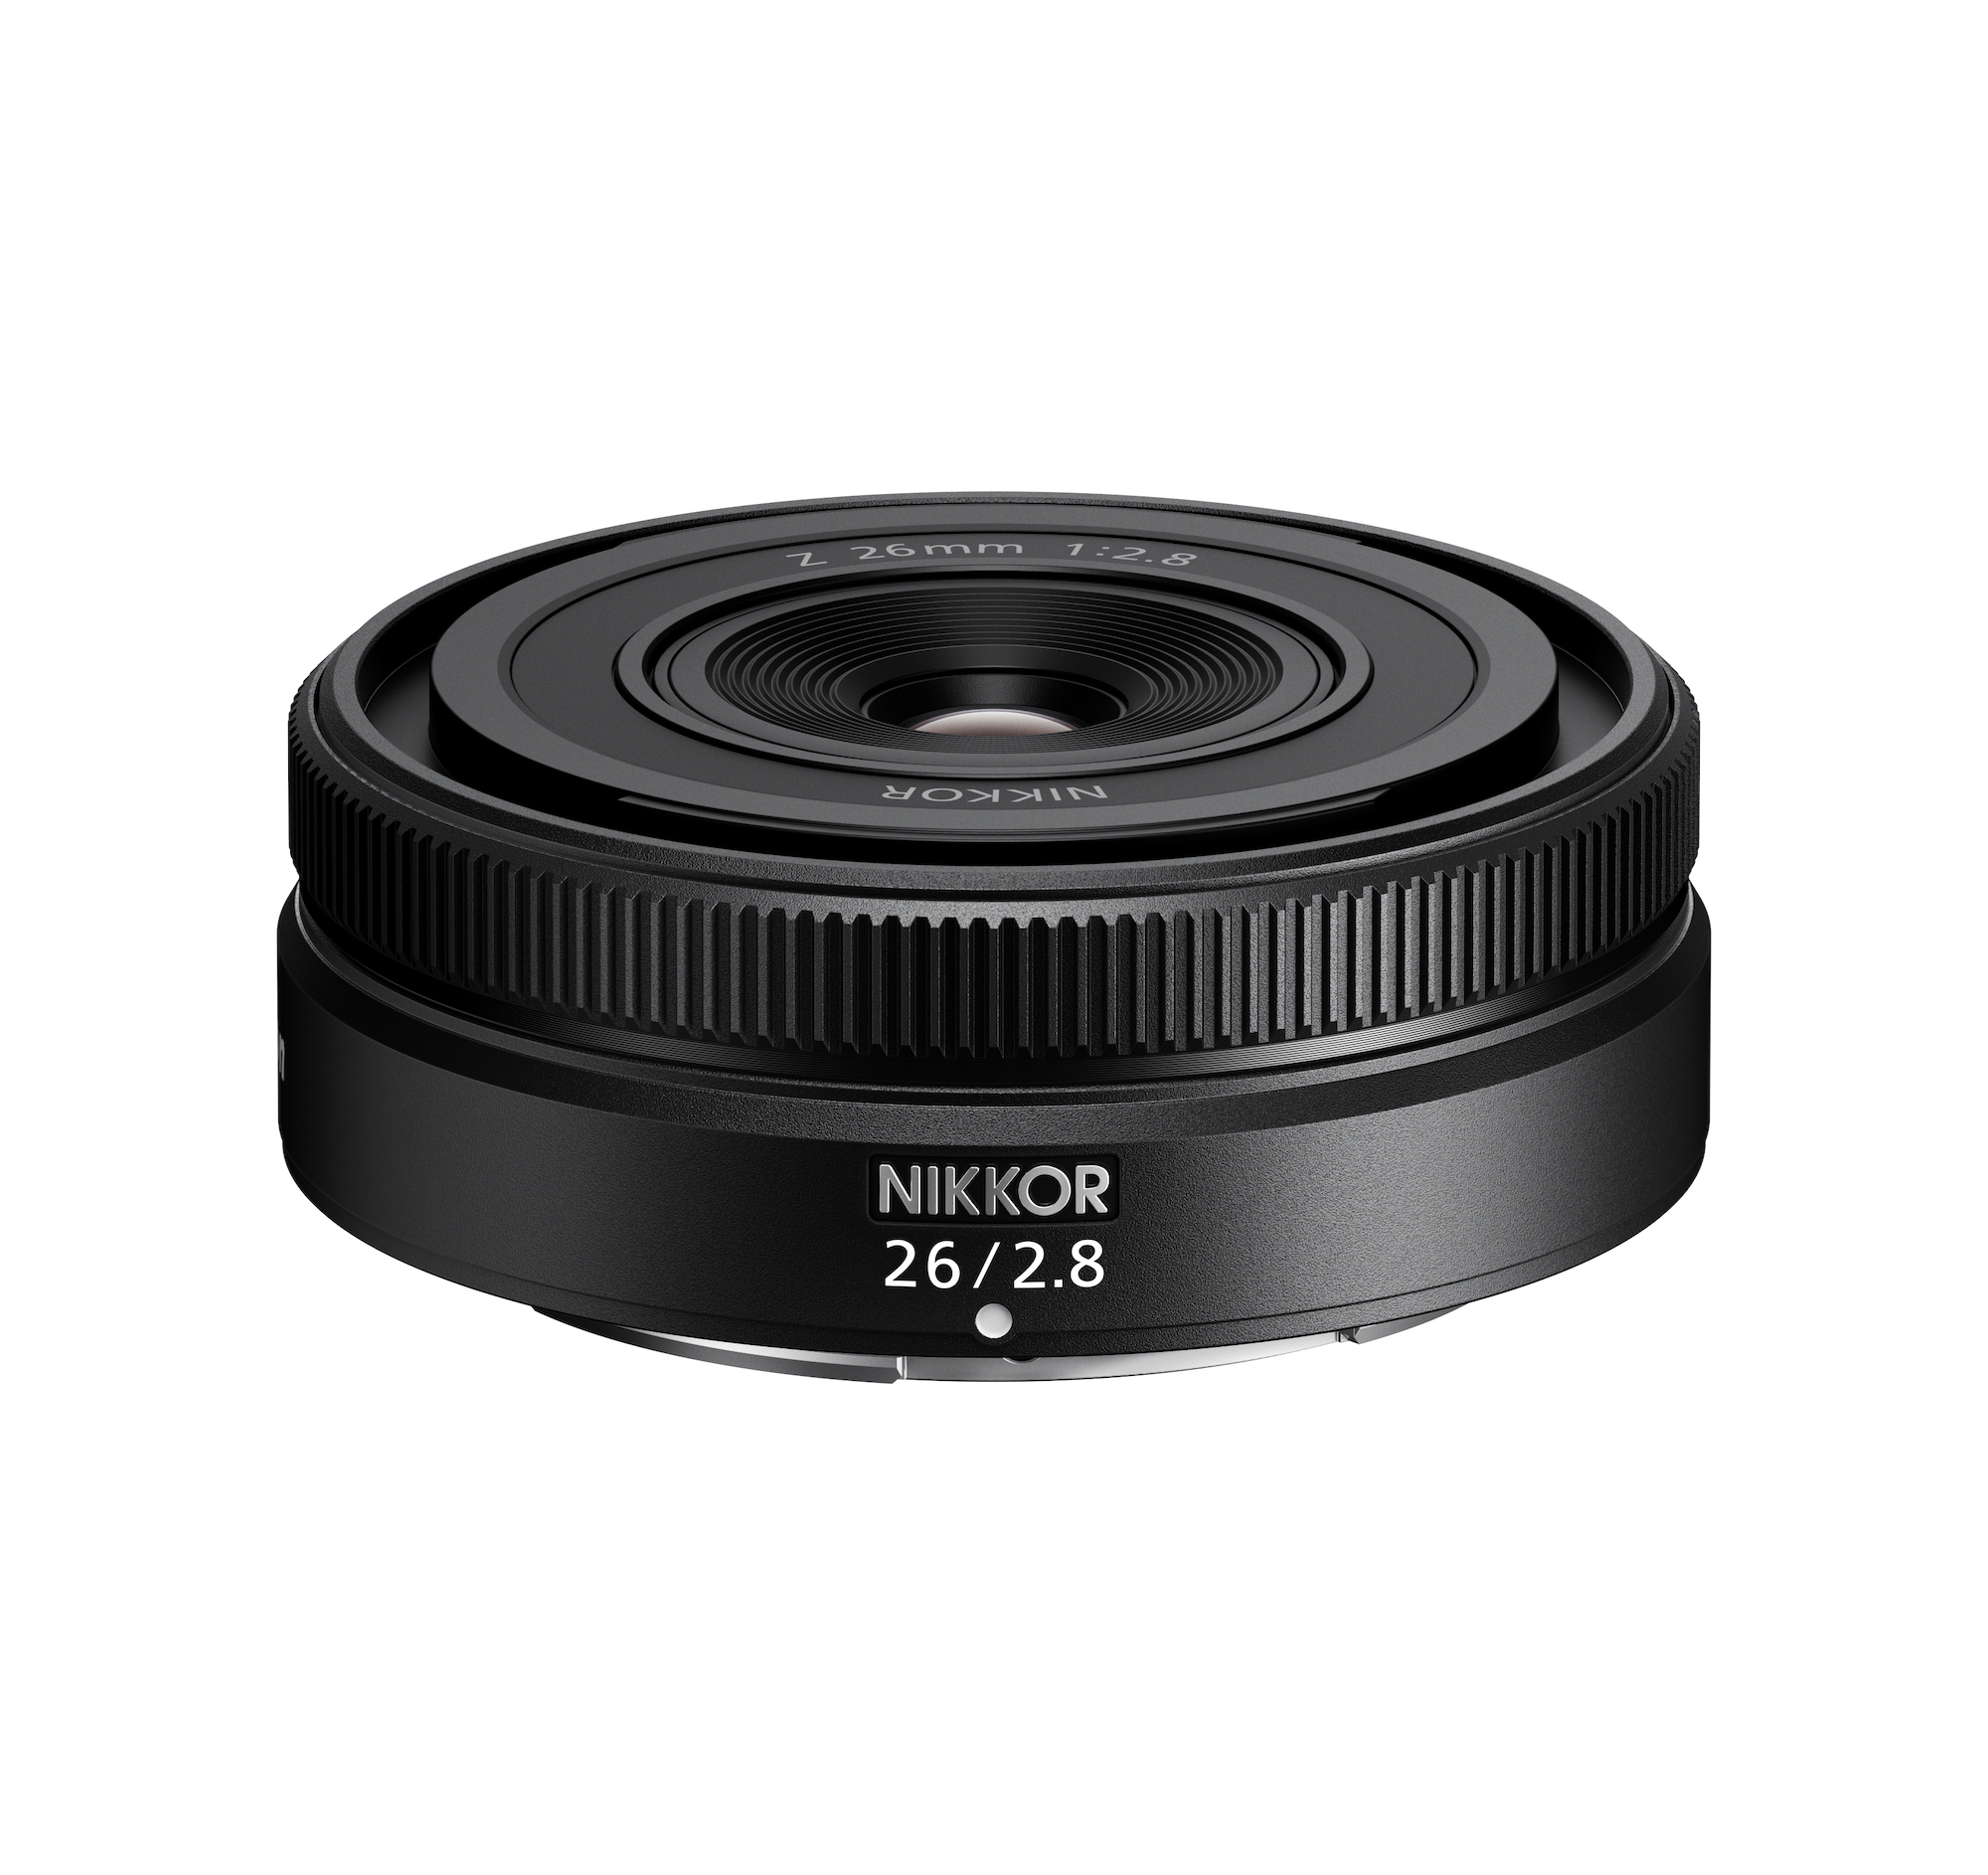 Nikon công bố phát triển hai ống kính 26mm F2.8 và 85mm F1.2 dòng S mới cho ngàm Z